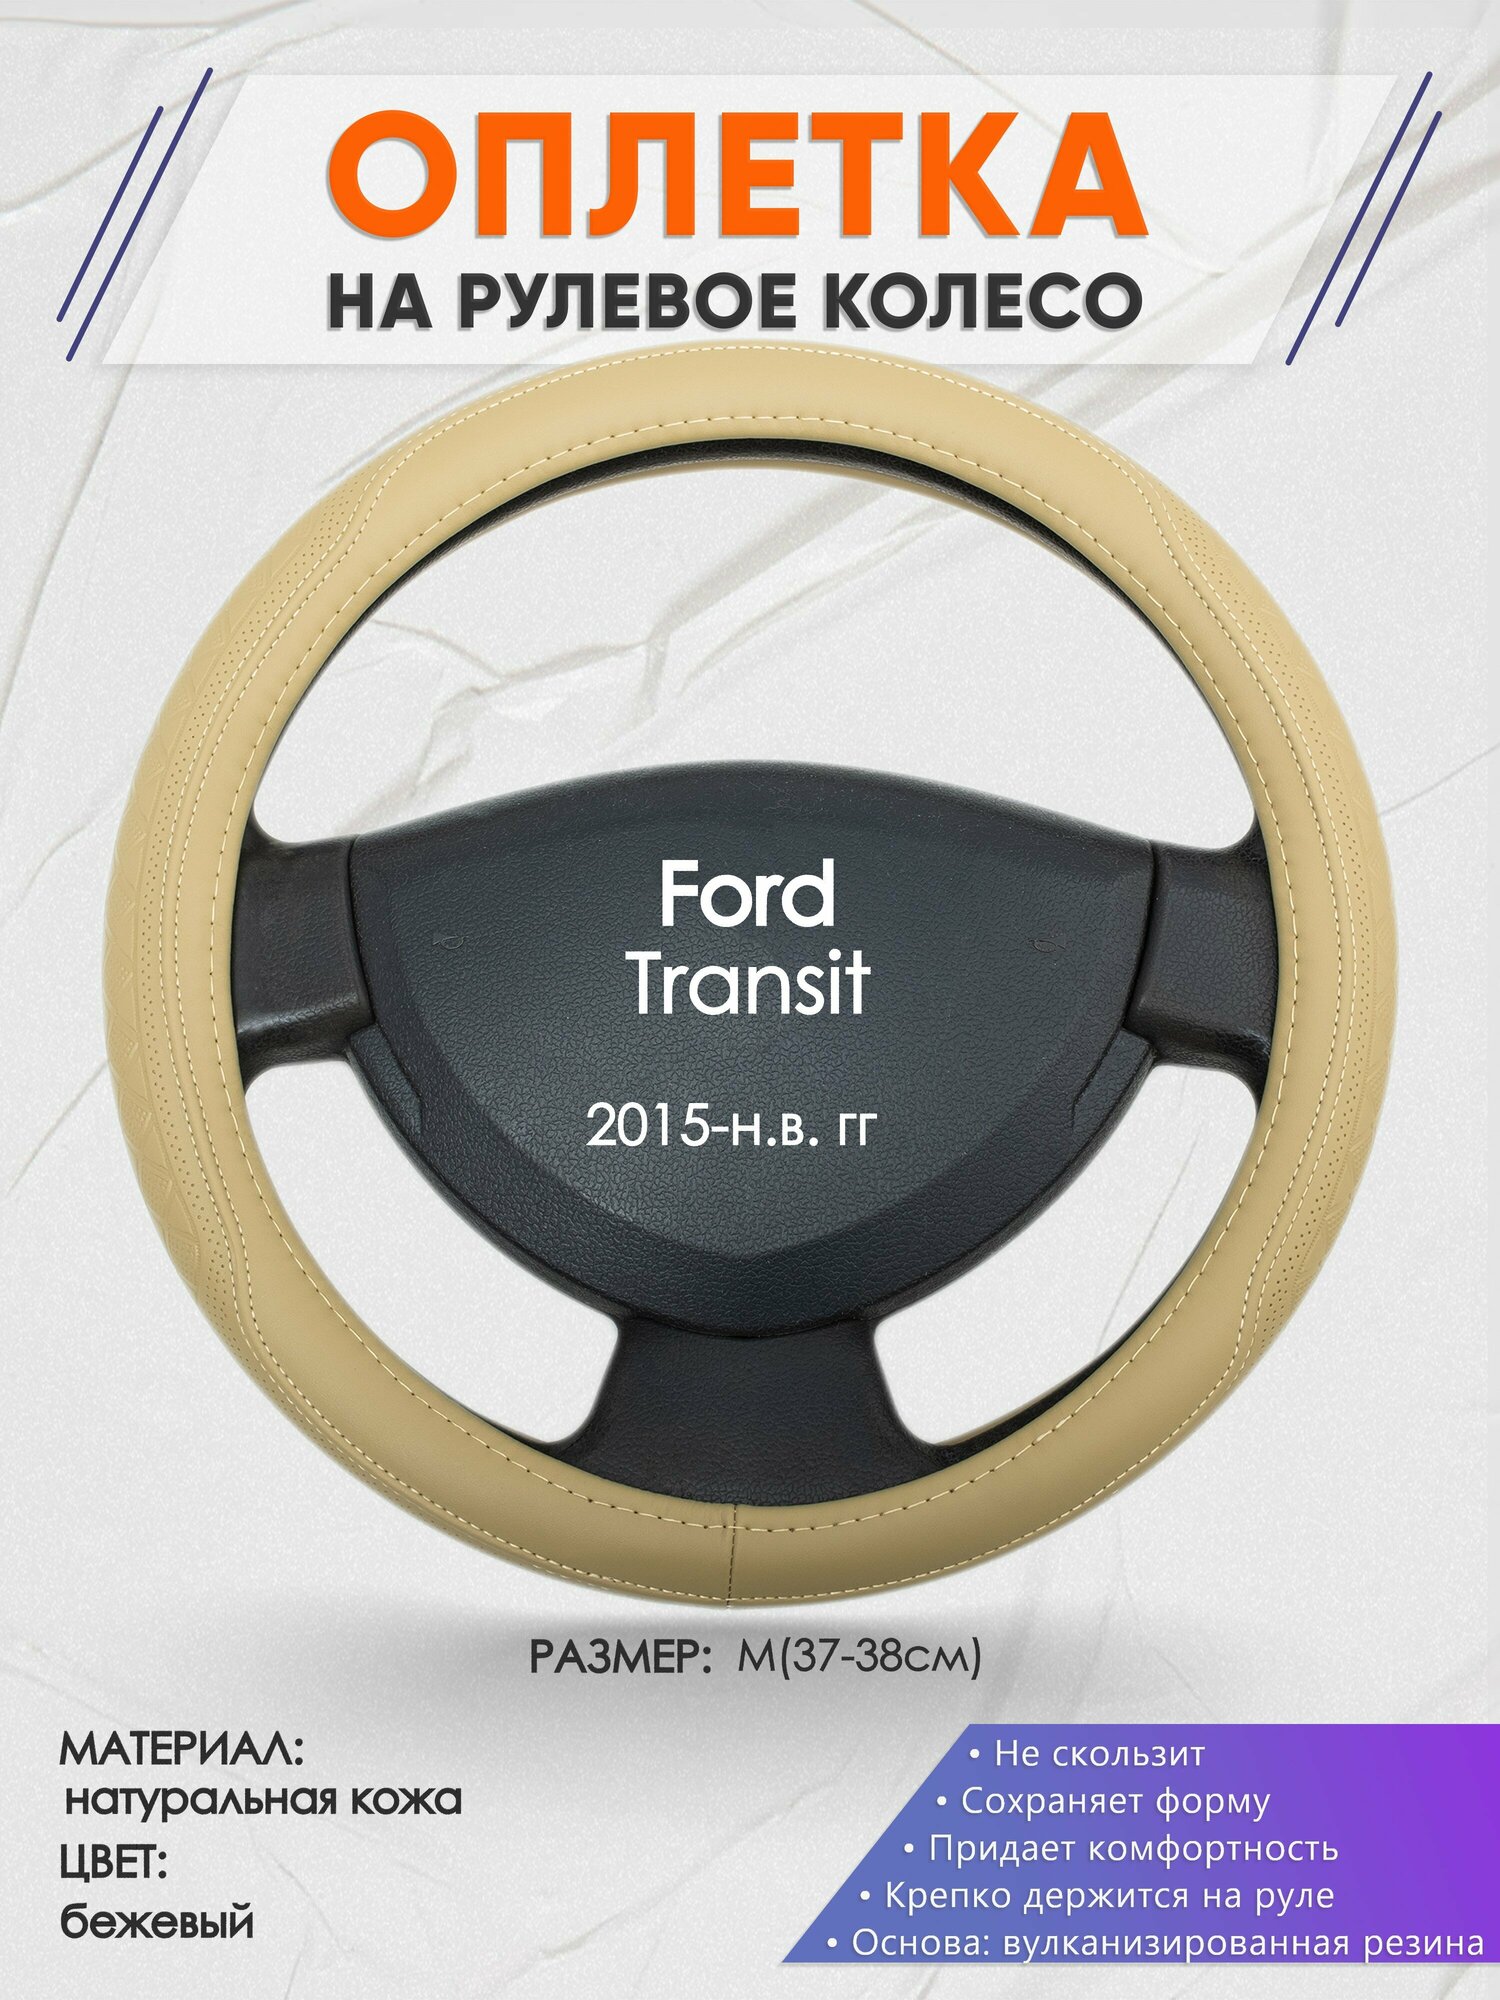 Оплетка на руль для Ford Transit (Форд Транзит) 2015-н. в, M(37-38см), Натуральная кожа 91